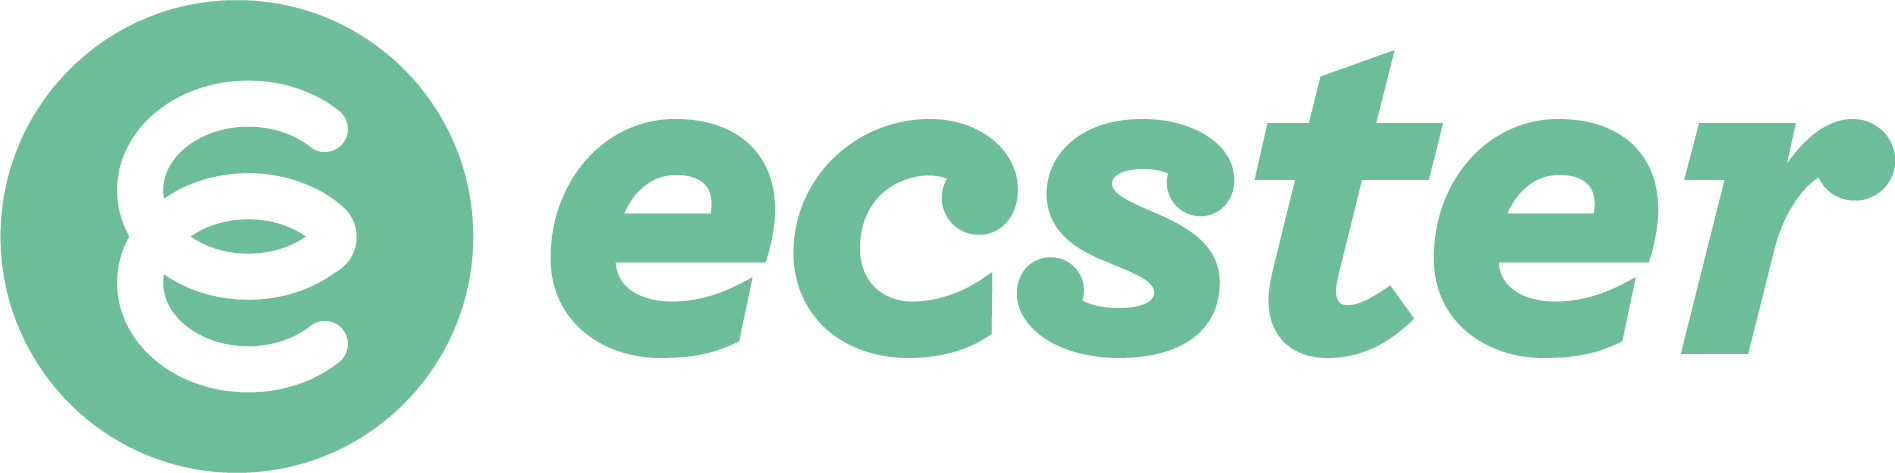 ecster_logo.jpg